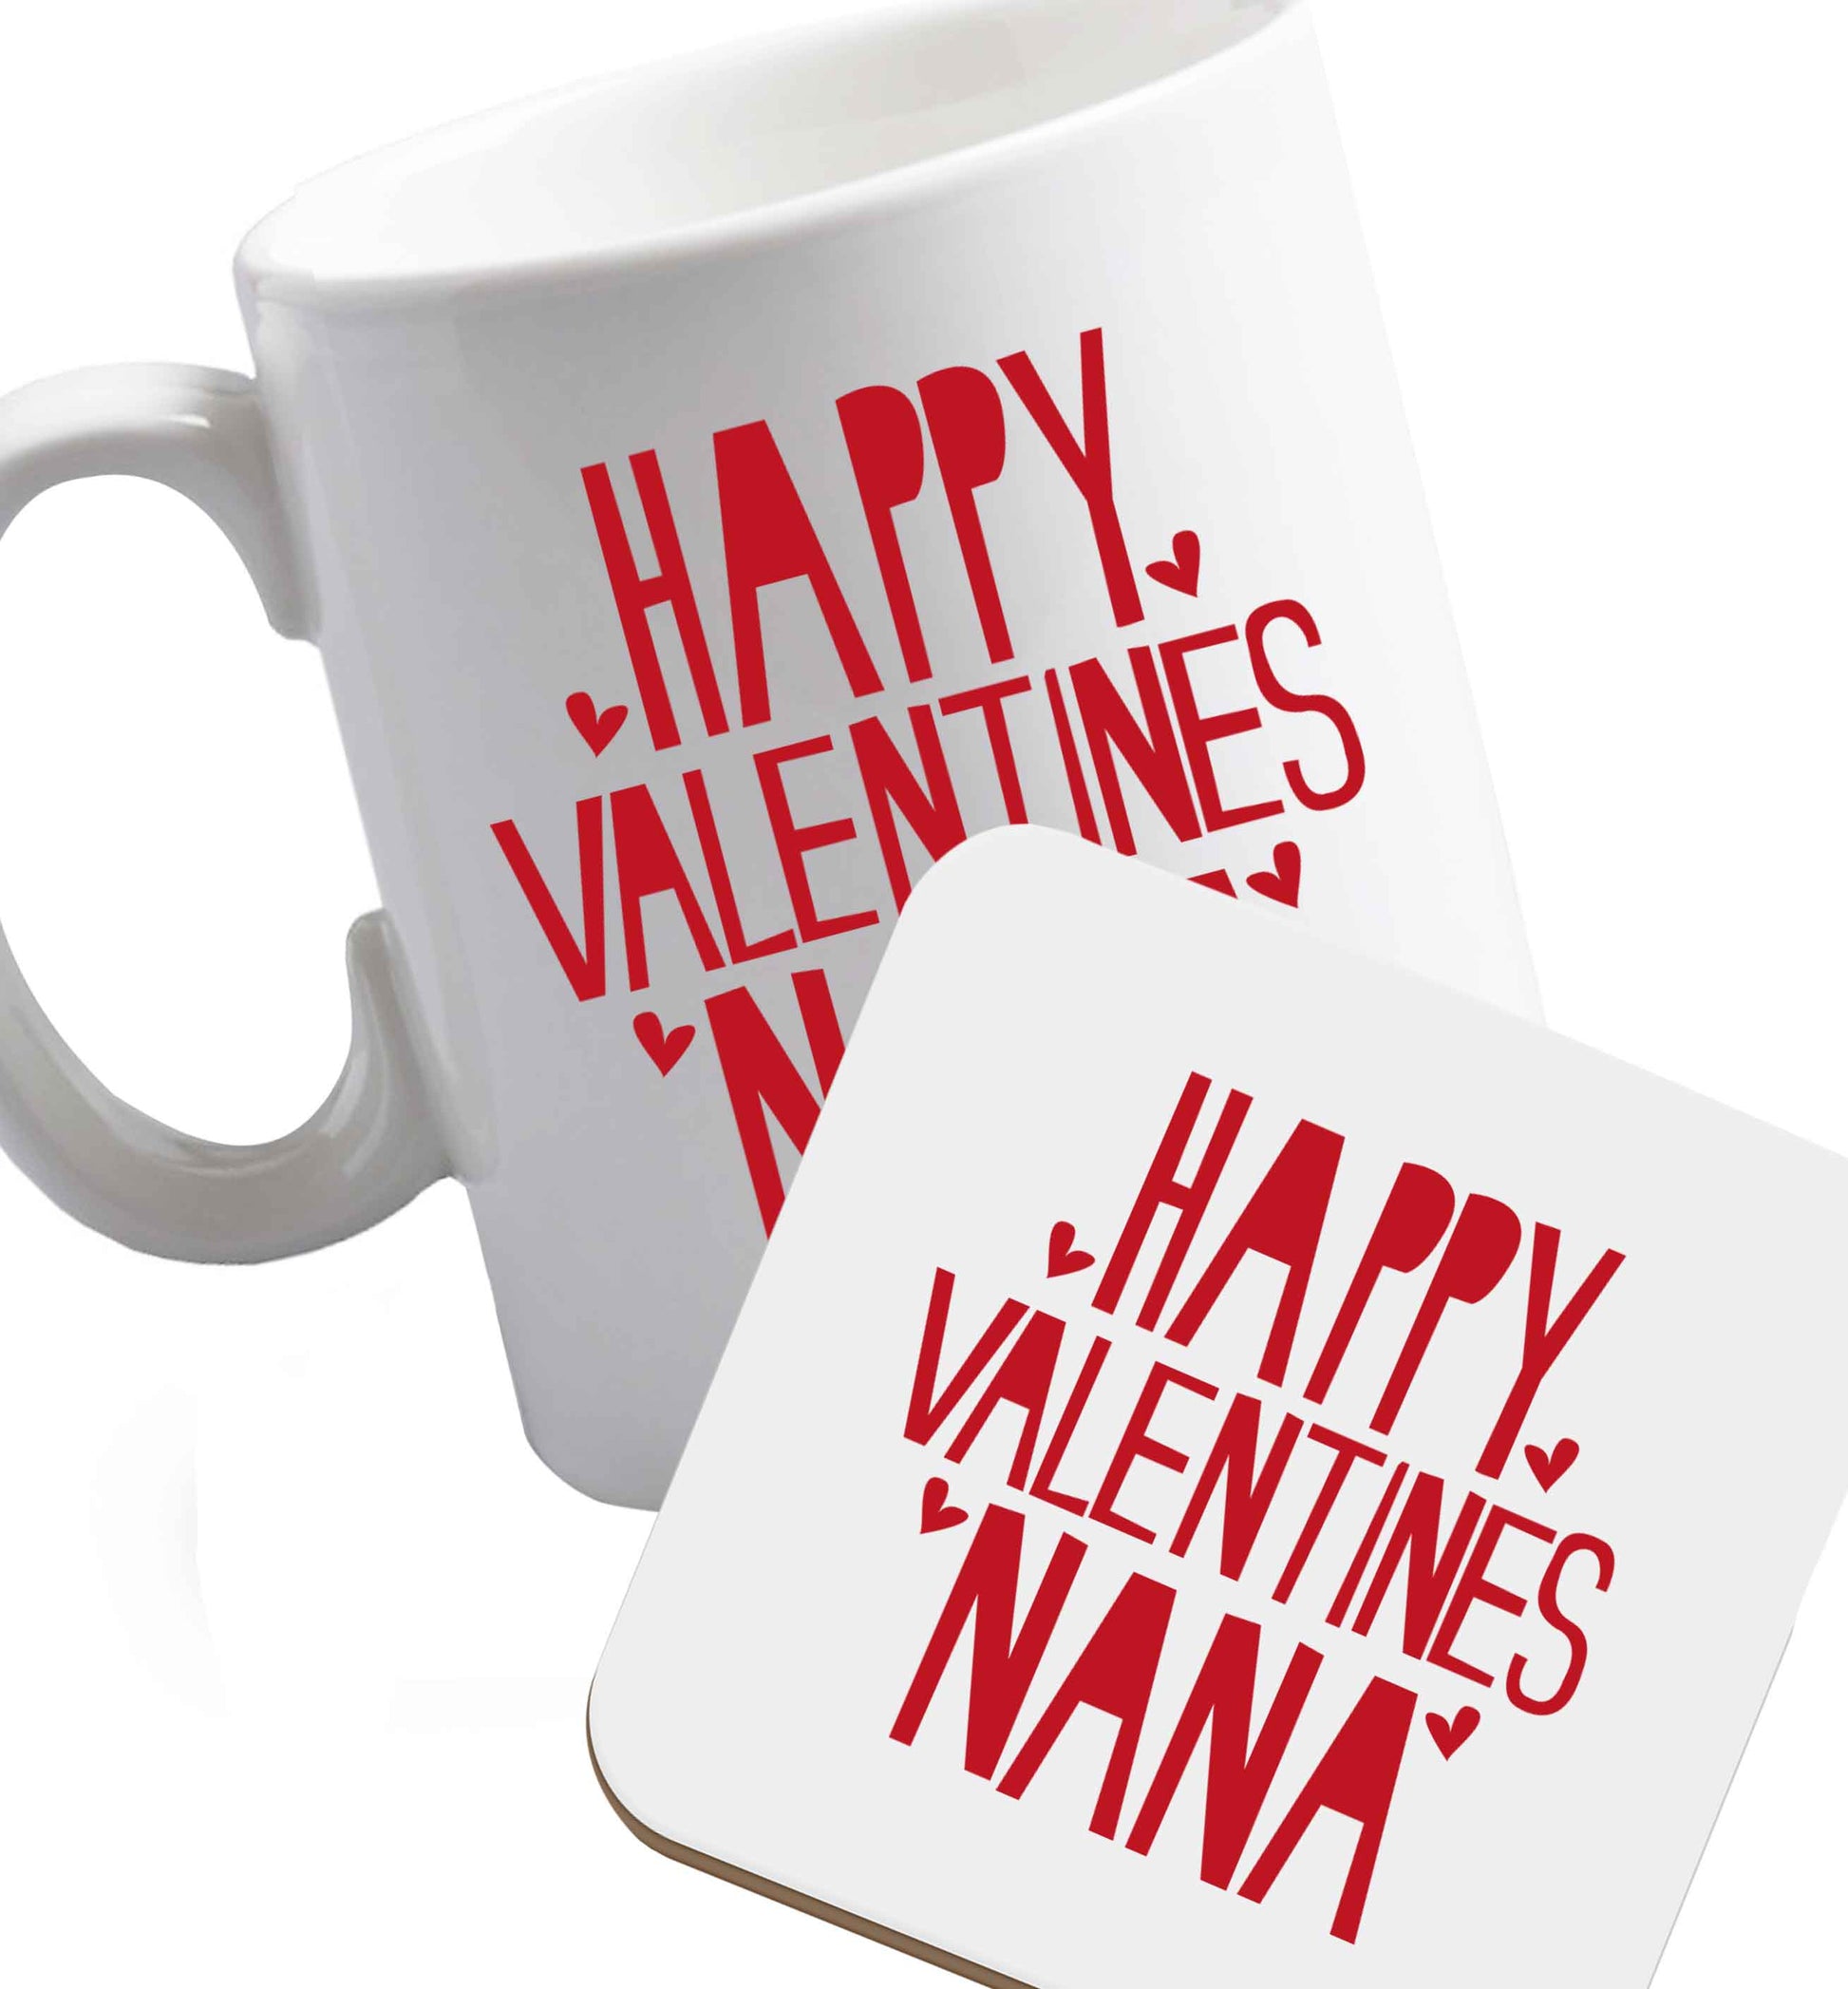 10 oz Happy valentines nana ceramic mug and coaster set right handed